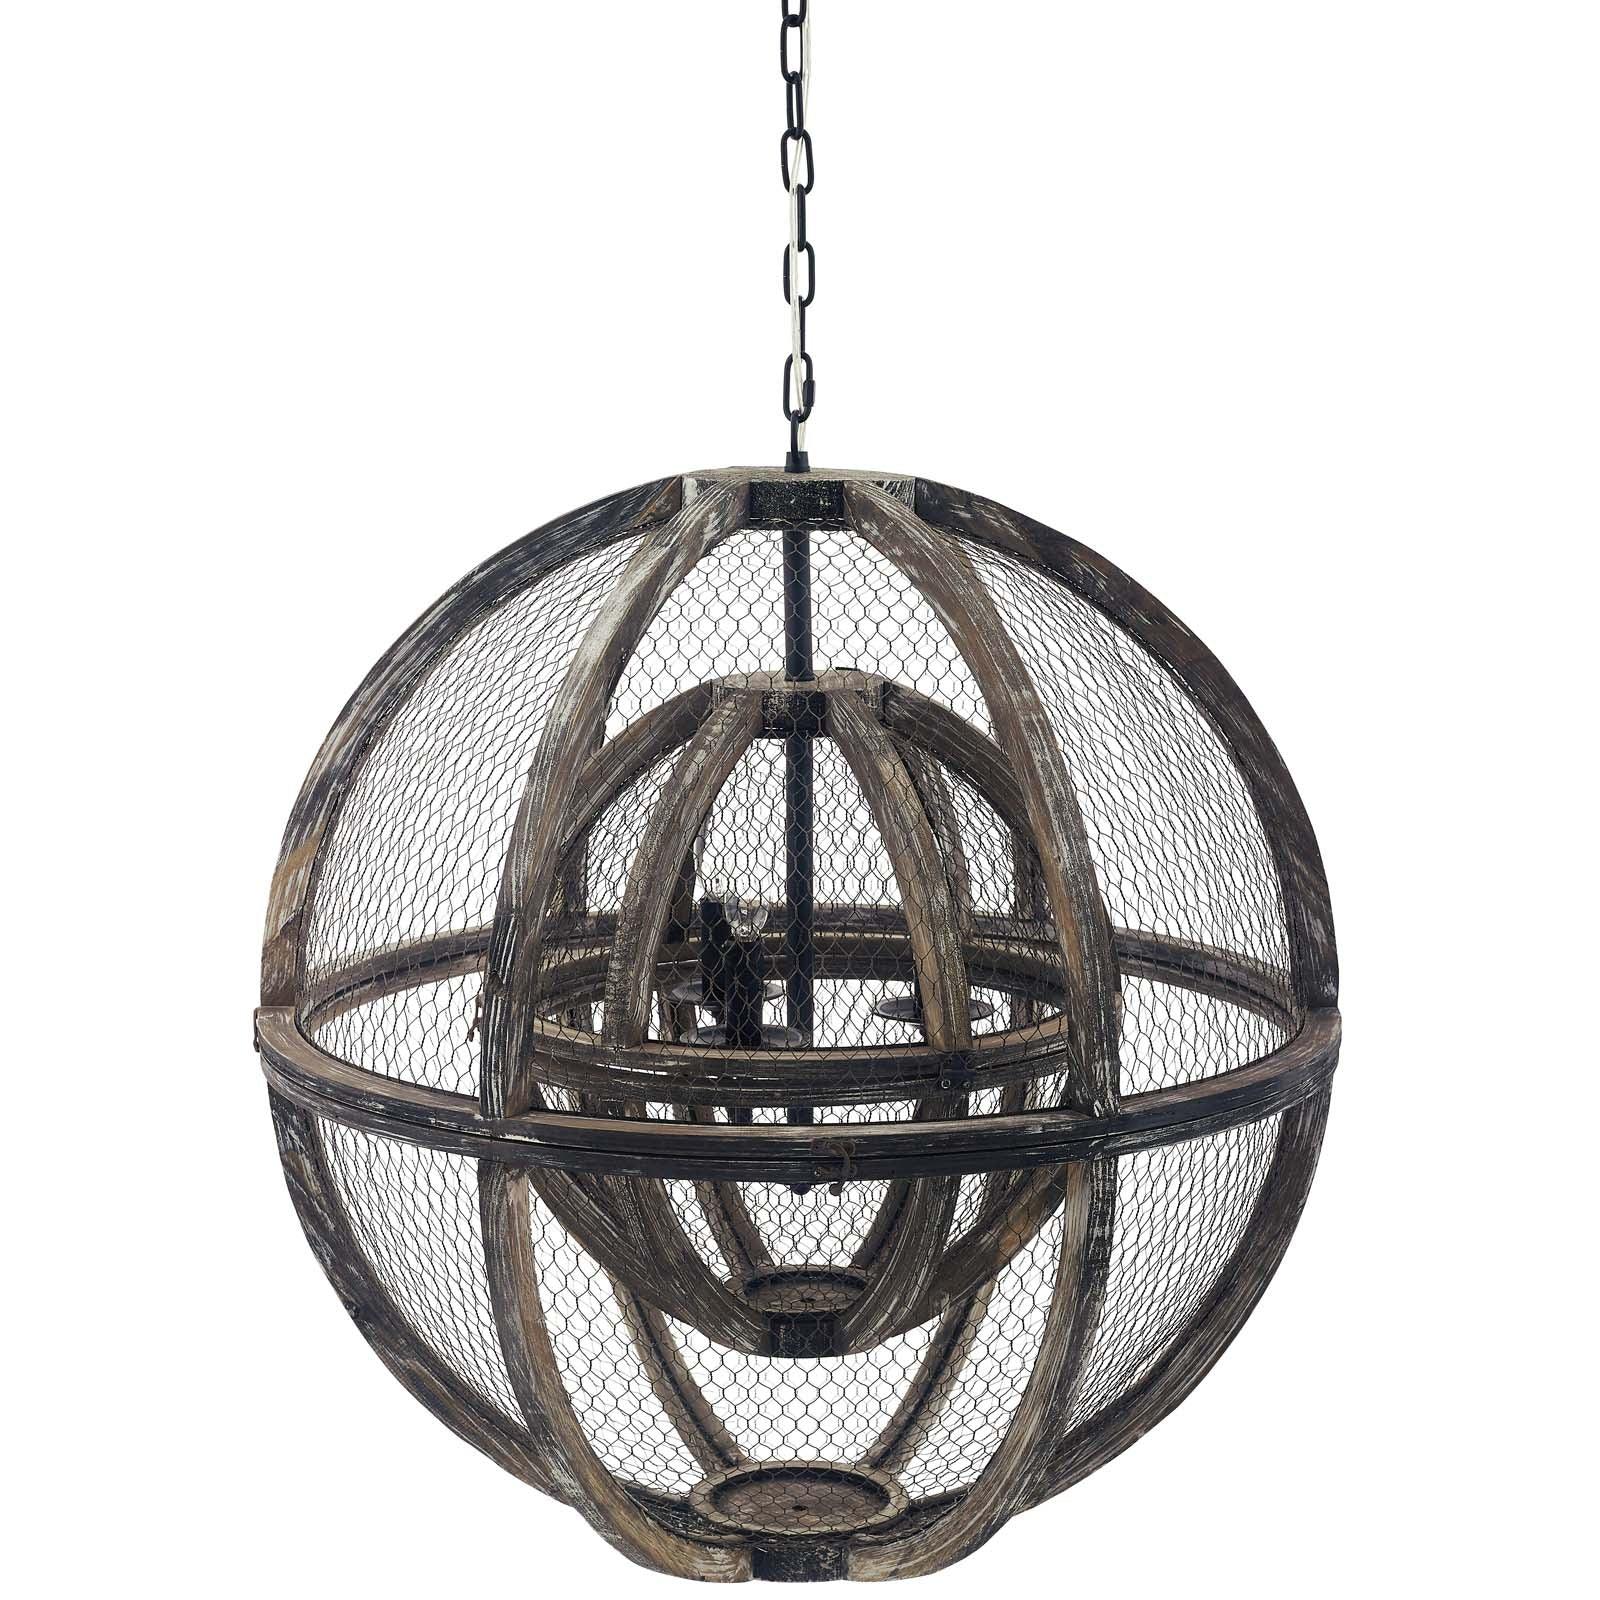 Modway Gravitate Globe Rustic Oak Wood Pendant Light Chandelier FredCo